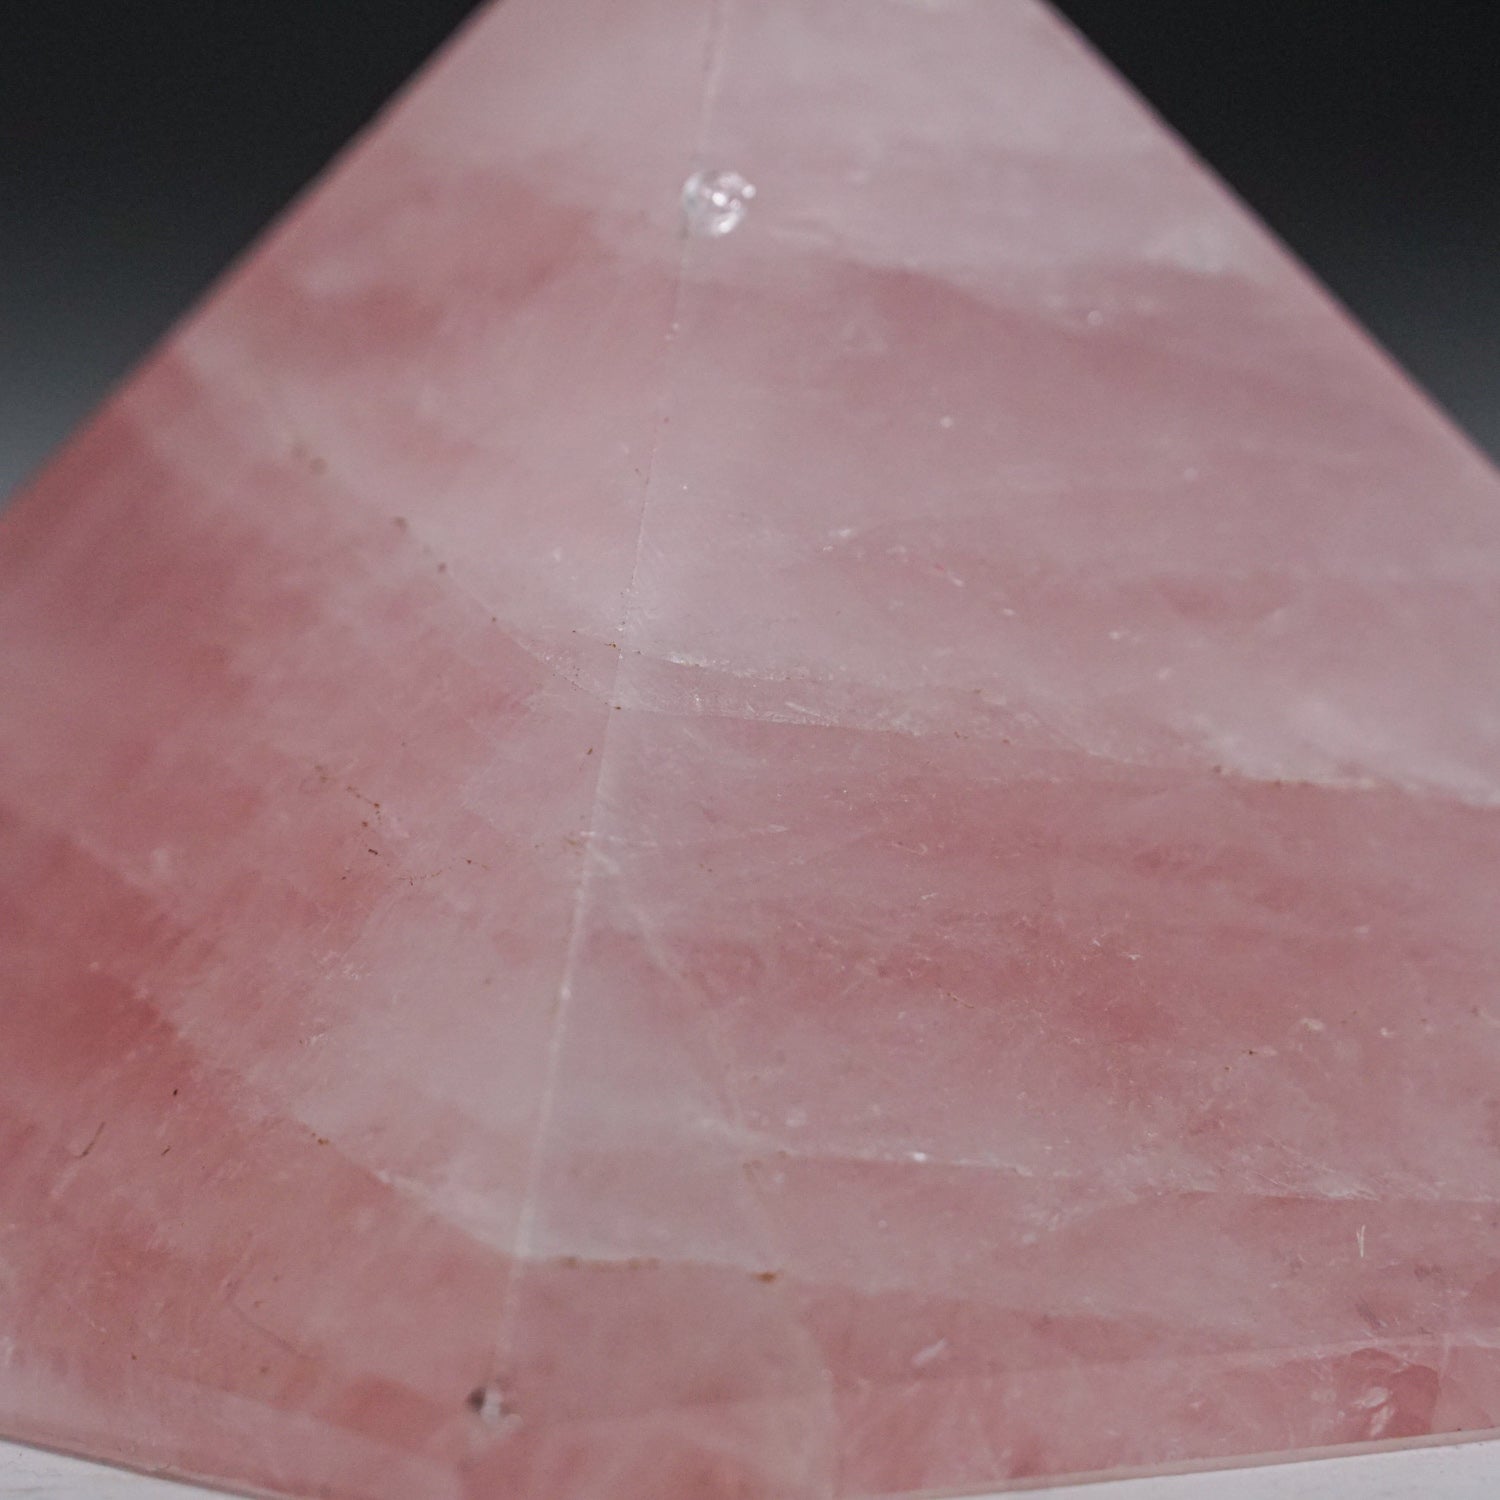 Gnuine Rose Quartz Gemstone Pyramid (1.2 lbs)